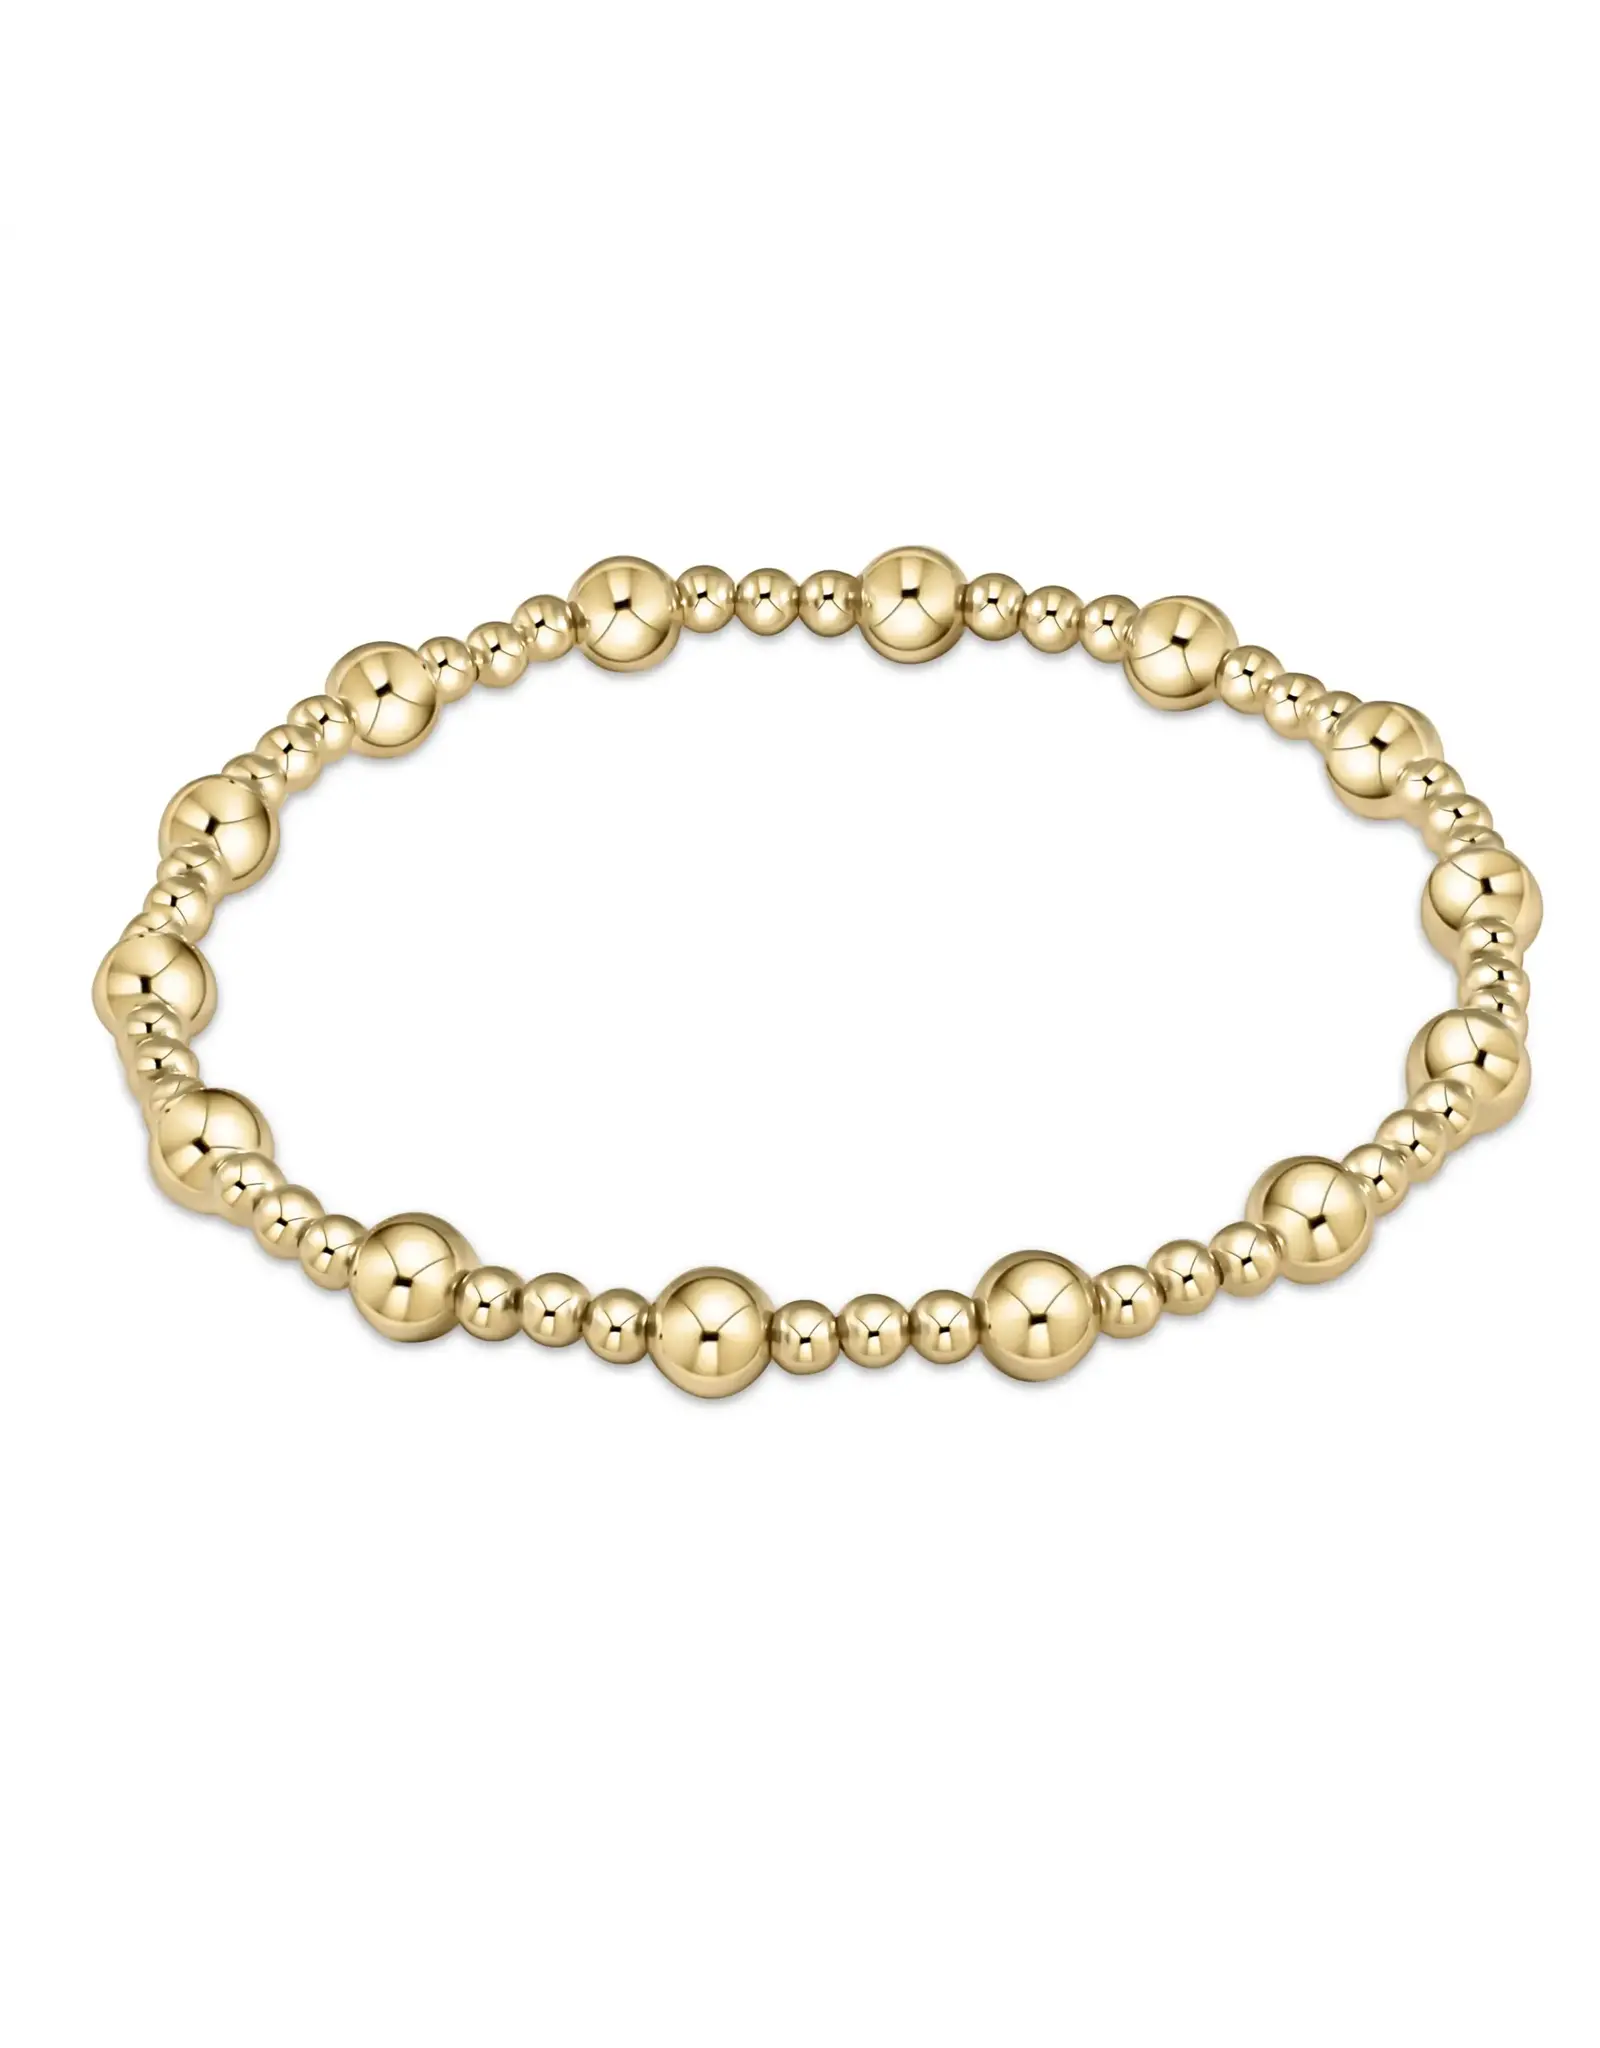 enewton EN: Classic Sincerity Pattern Bead Bracelet